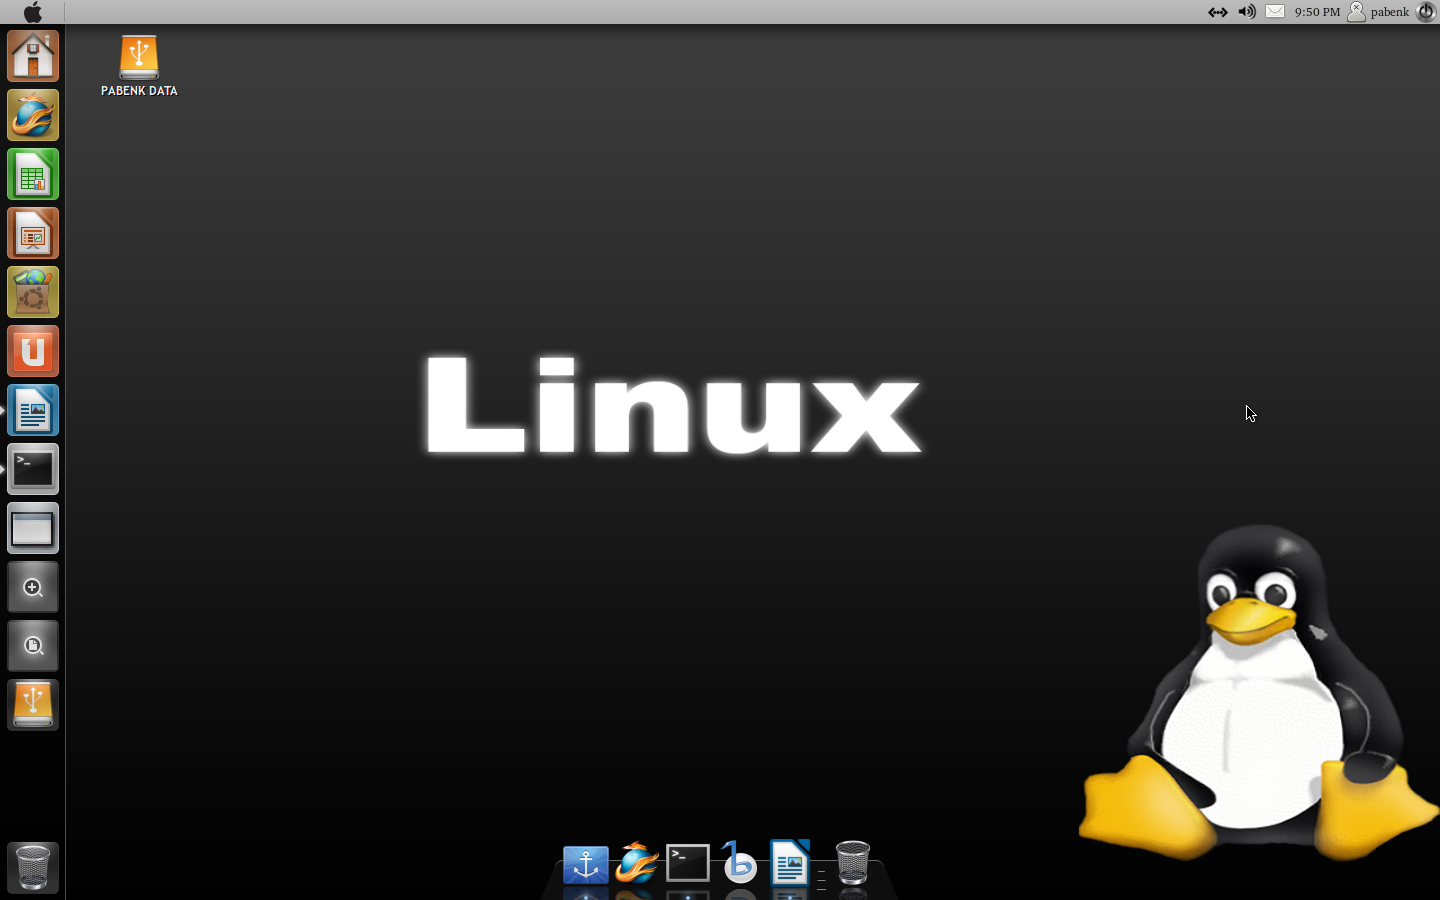 Message linux. Линекс опереционая система. Линукс Операционная система. Как выглядит Операционная система Linux. Линекс Операционная системп.